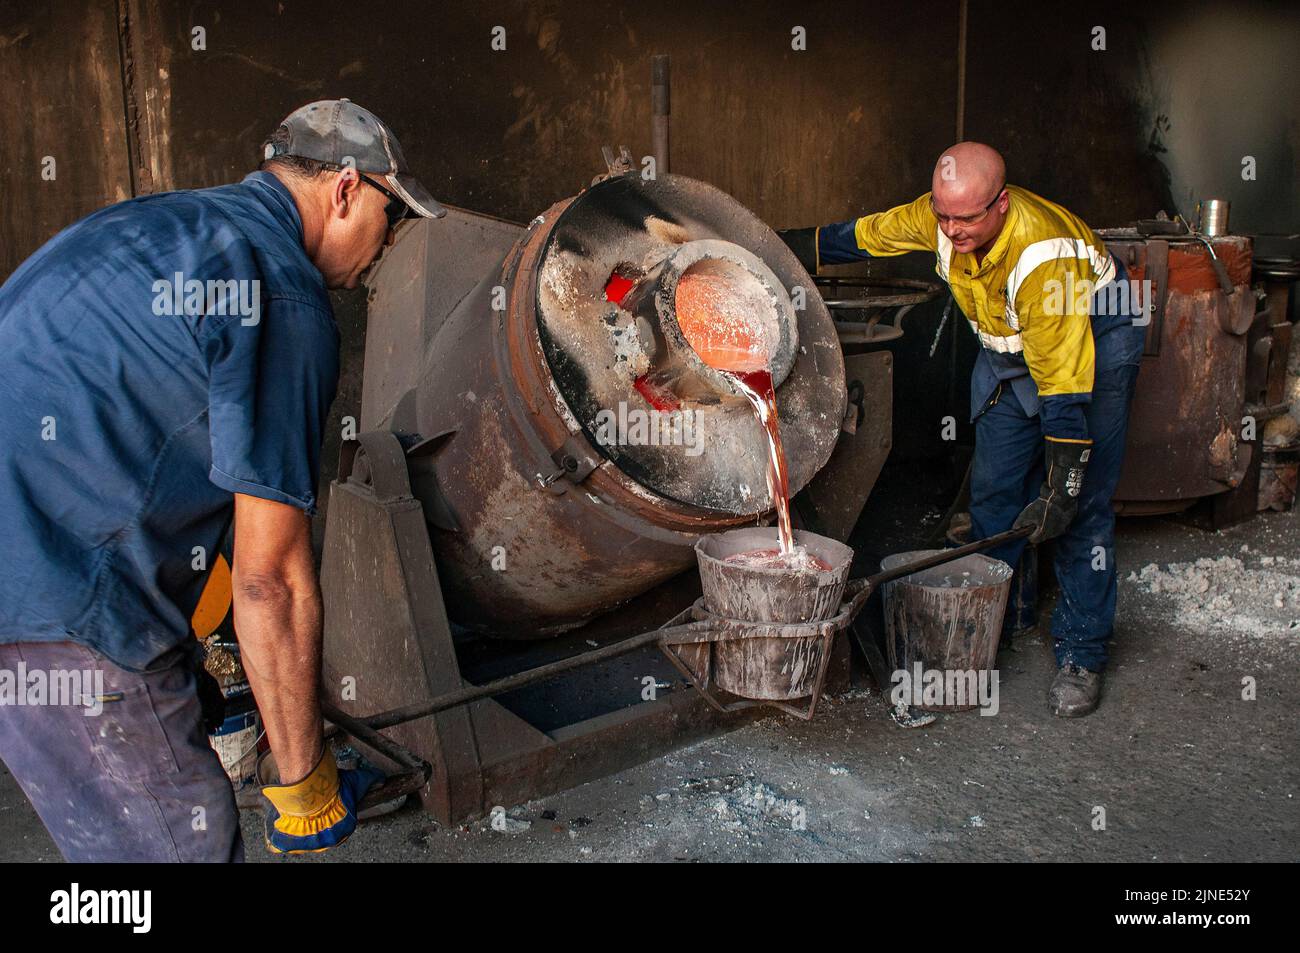 Les travailleurs de la fonderie d'une petite fonderie familiale à Perth, en Australie occidentale, déversent de l'aluminium fondu dans un four Banque D'Images